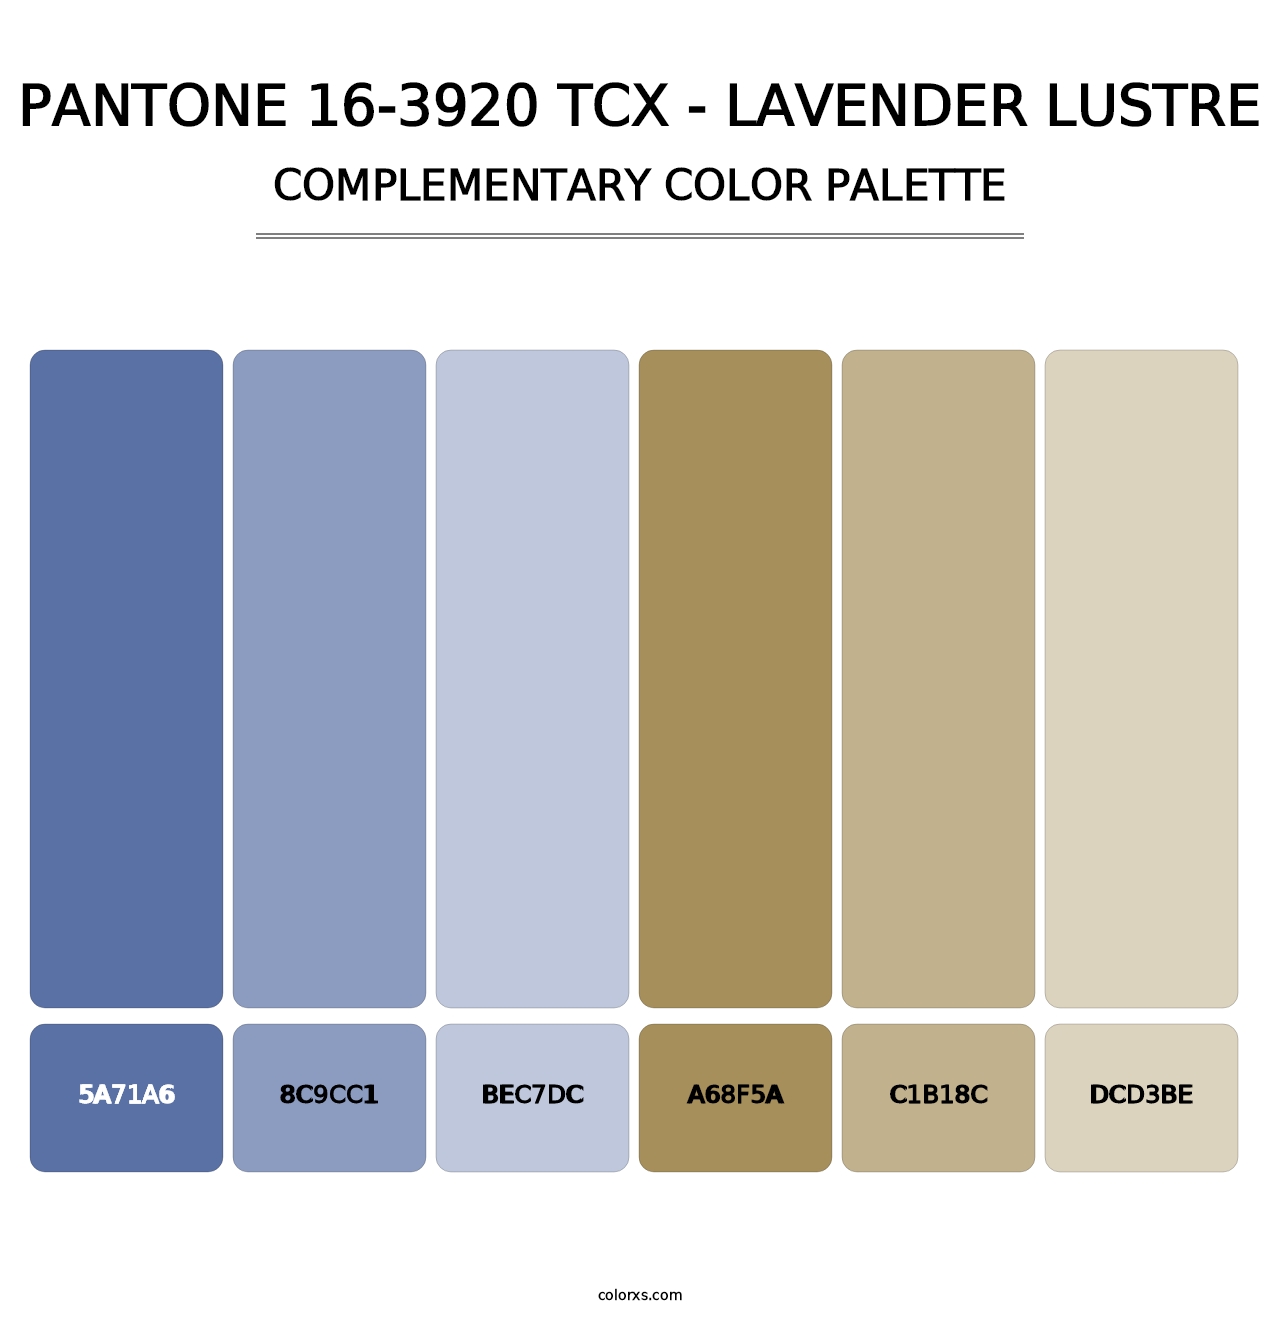 PANTONE 16-3920 TCX - Lavender Lustre - Complementary Color Palette